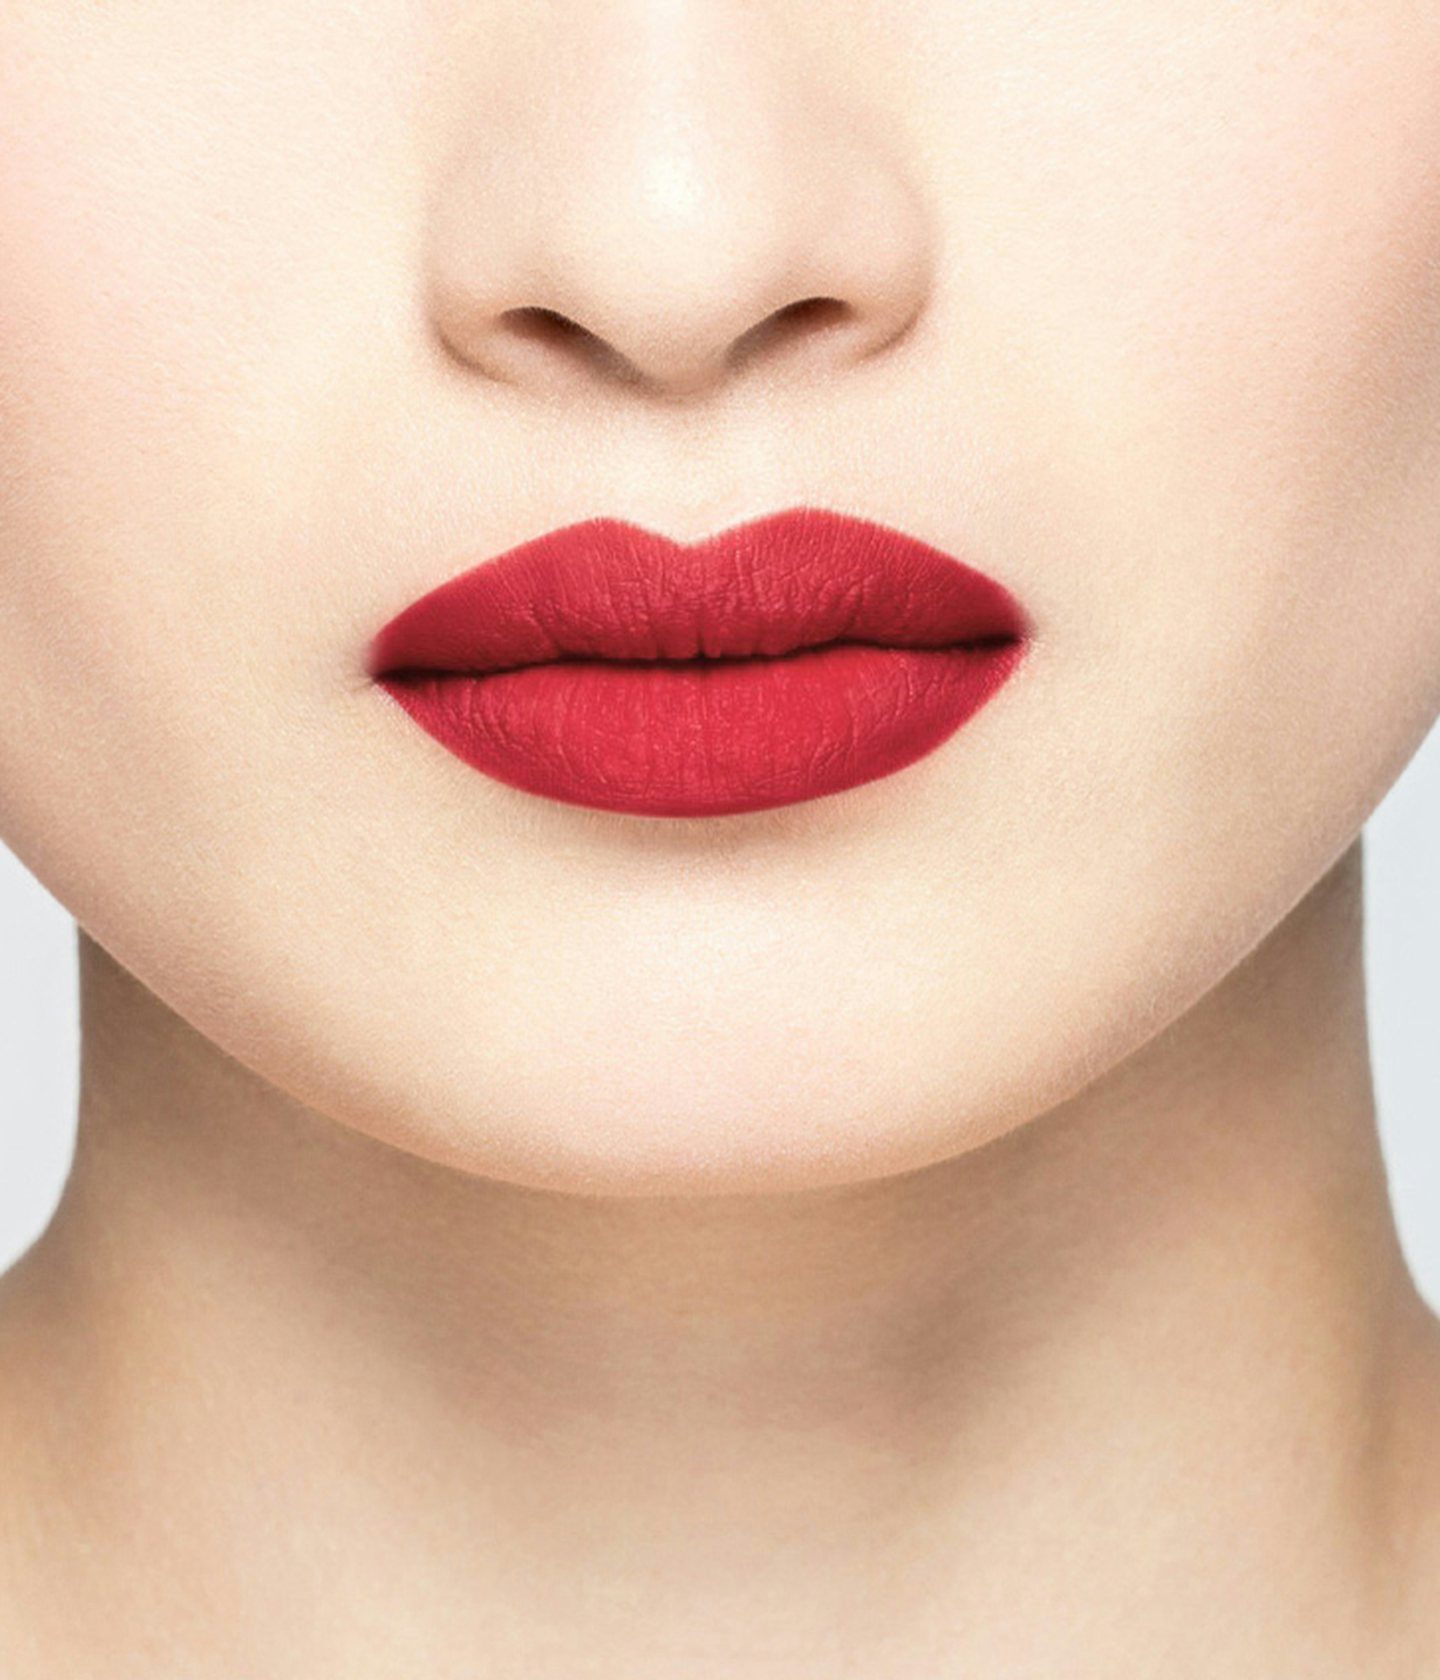 La bouche rouge rouge à lèvres Folie sur les lèvres d’un mannequin asiatique